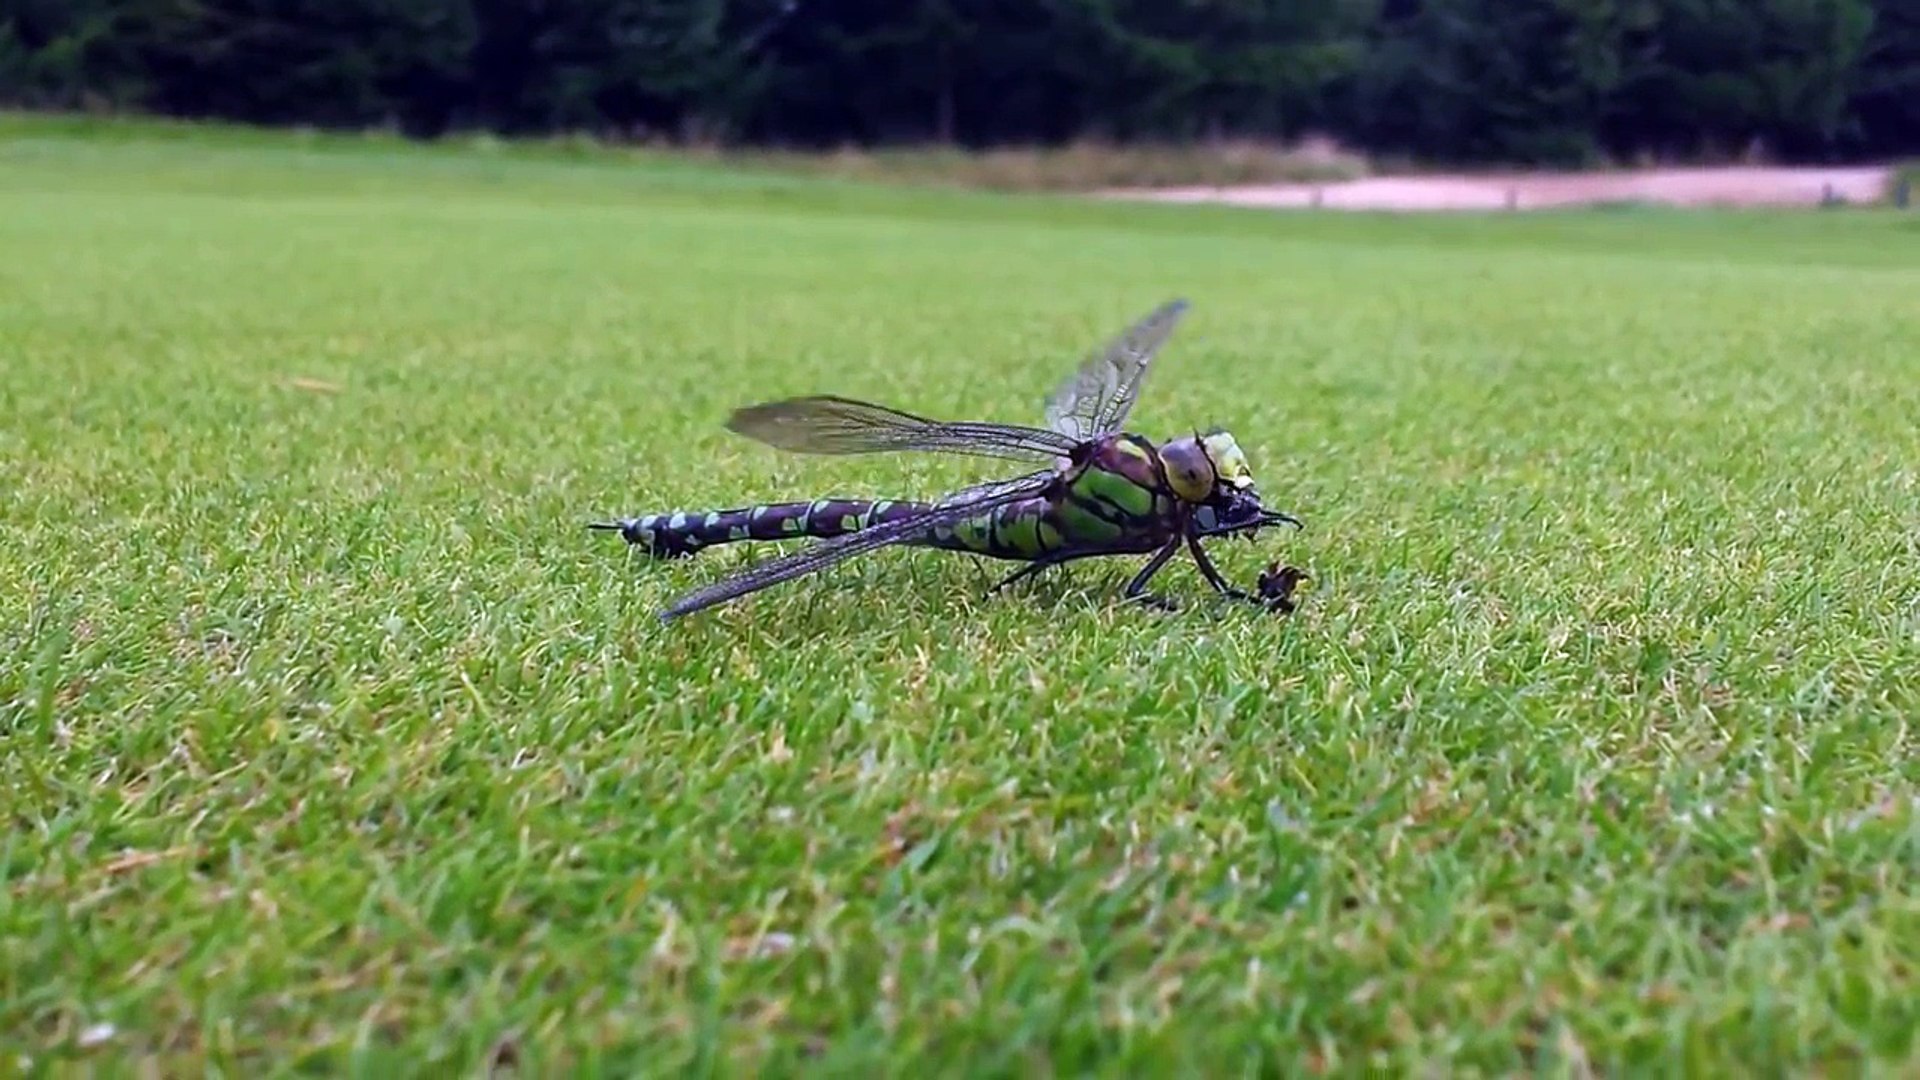 Dragonfly feeding on wasp